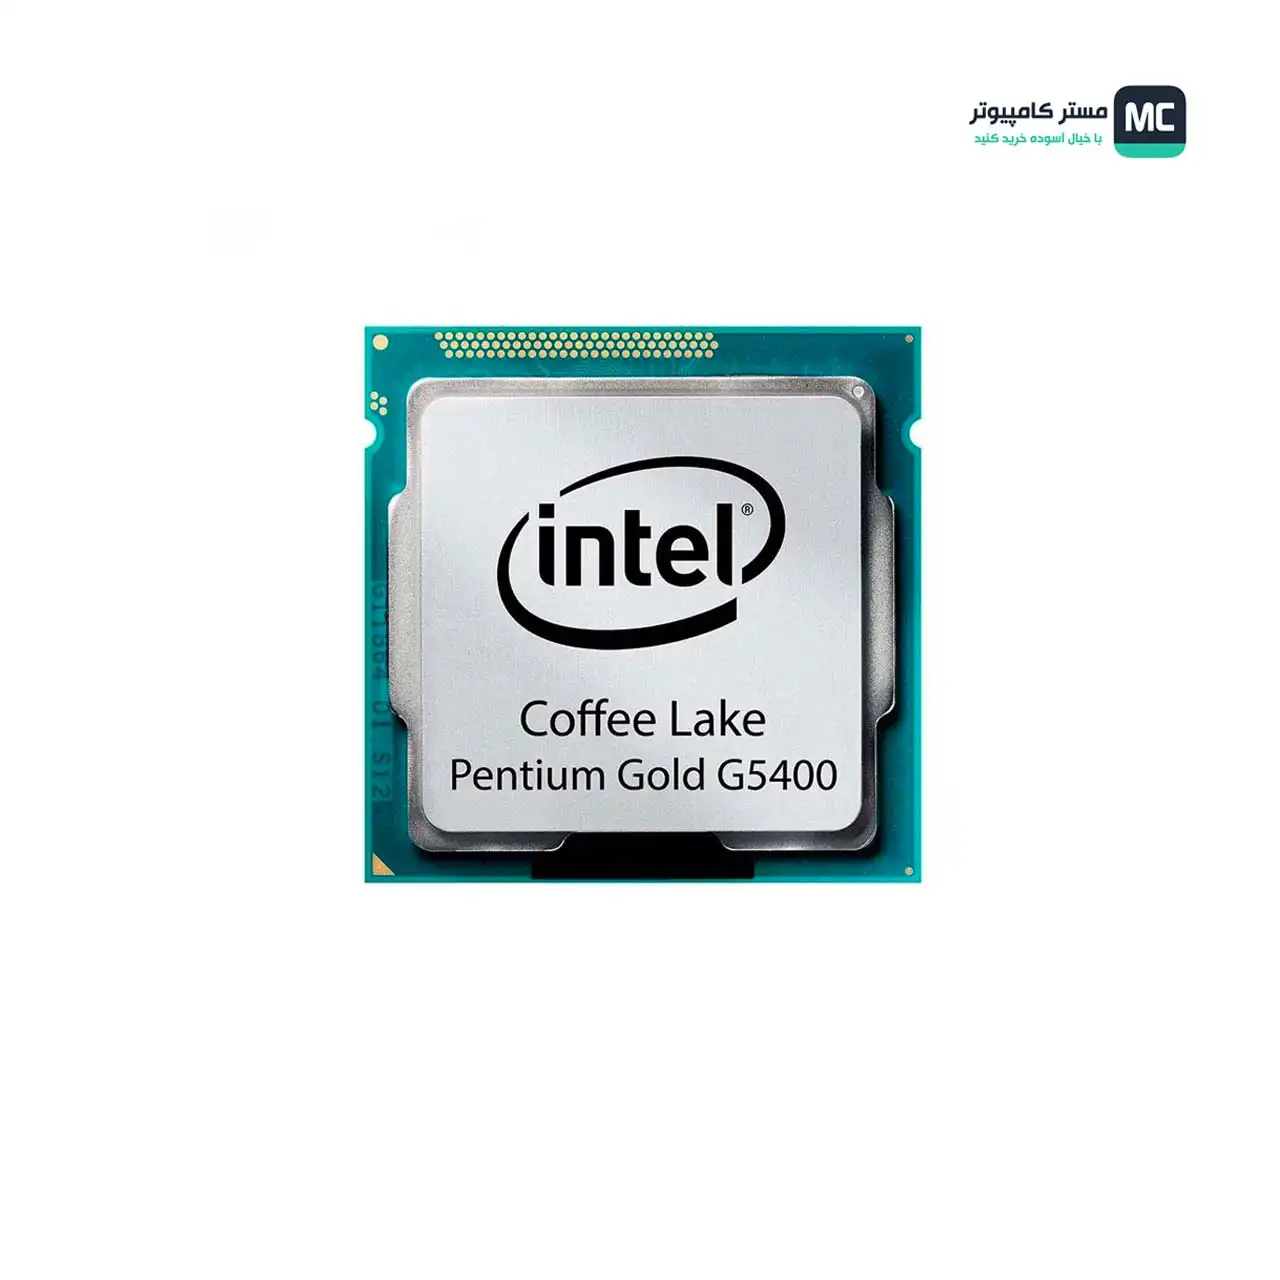 Pentium Gold G5400 Main Photo